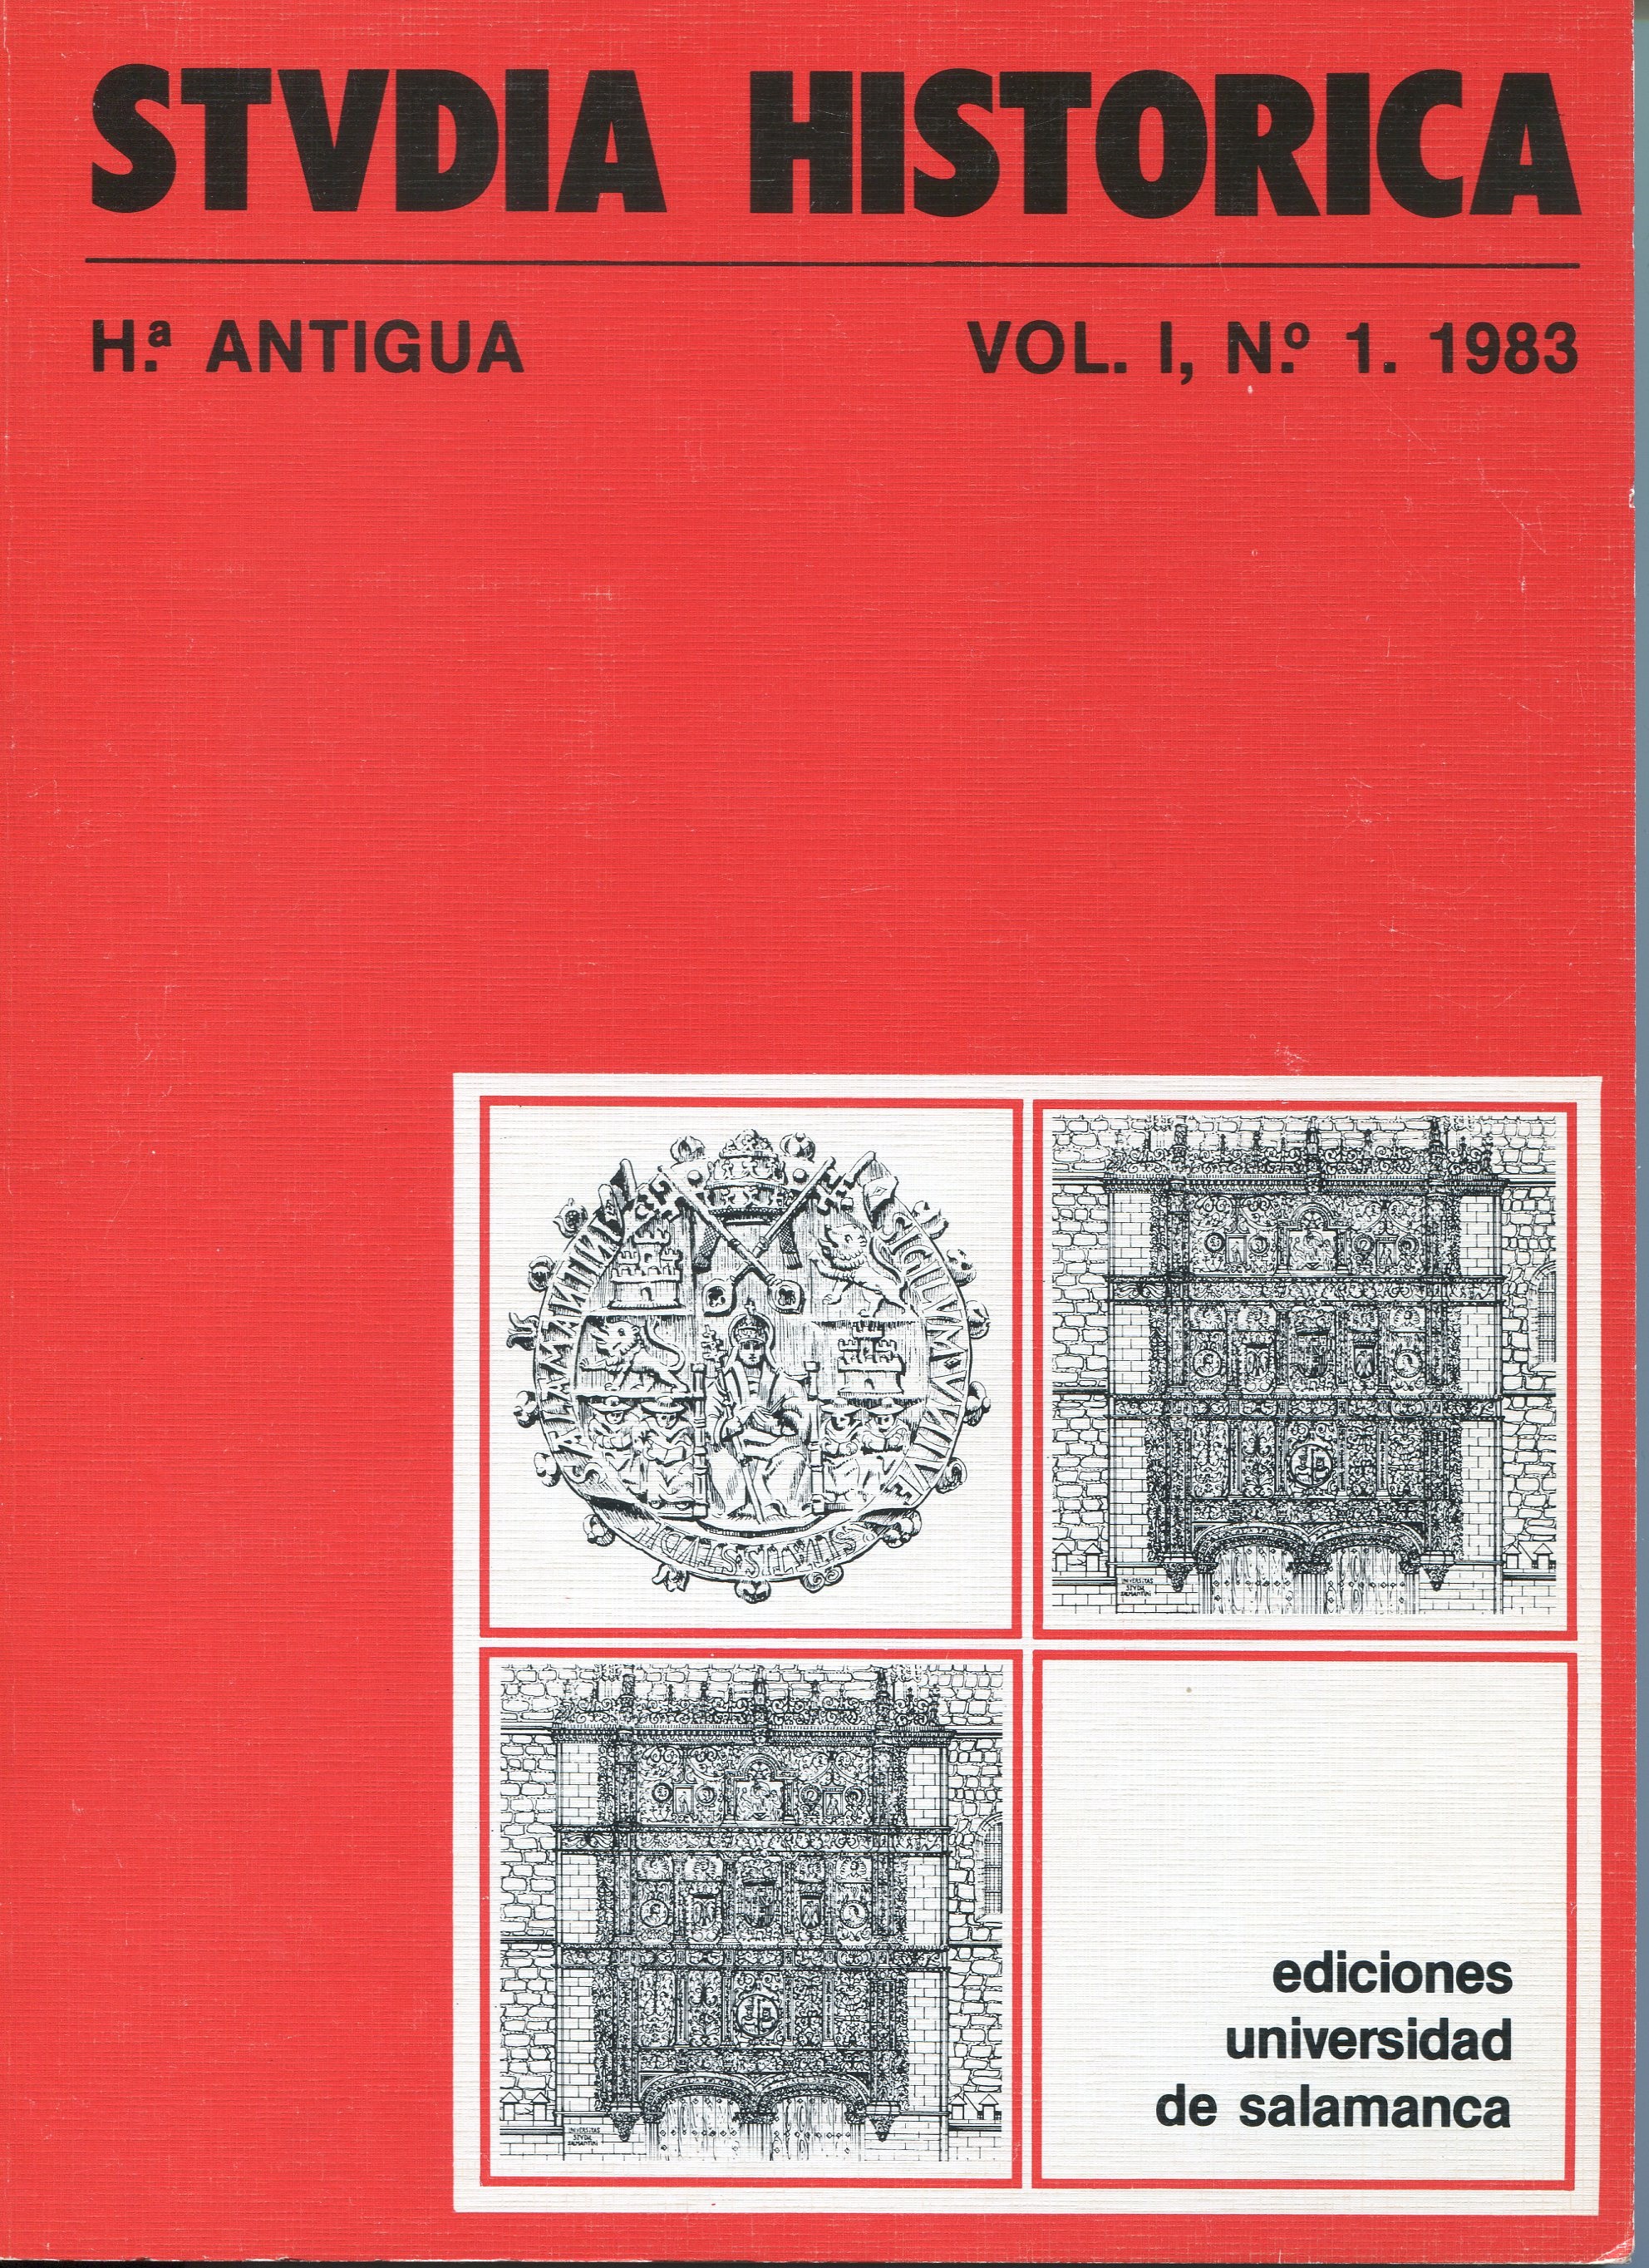                         View Vol. 1 (1983)
                    